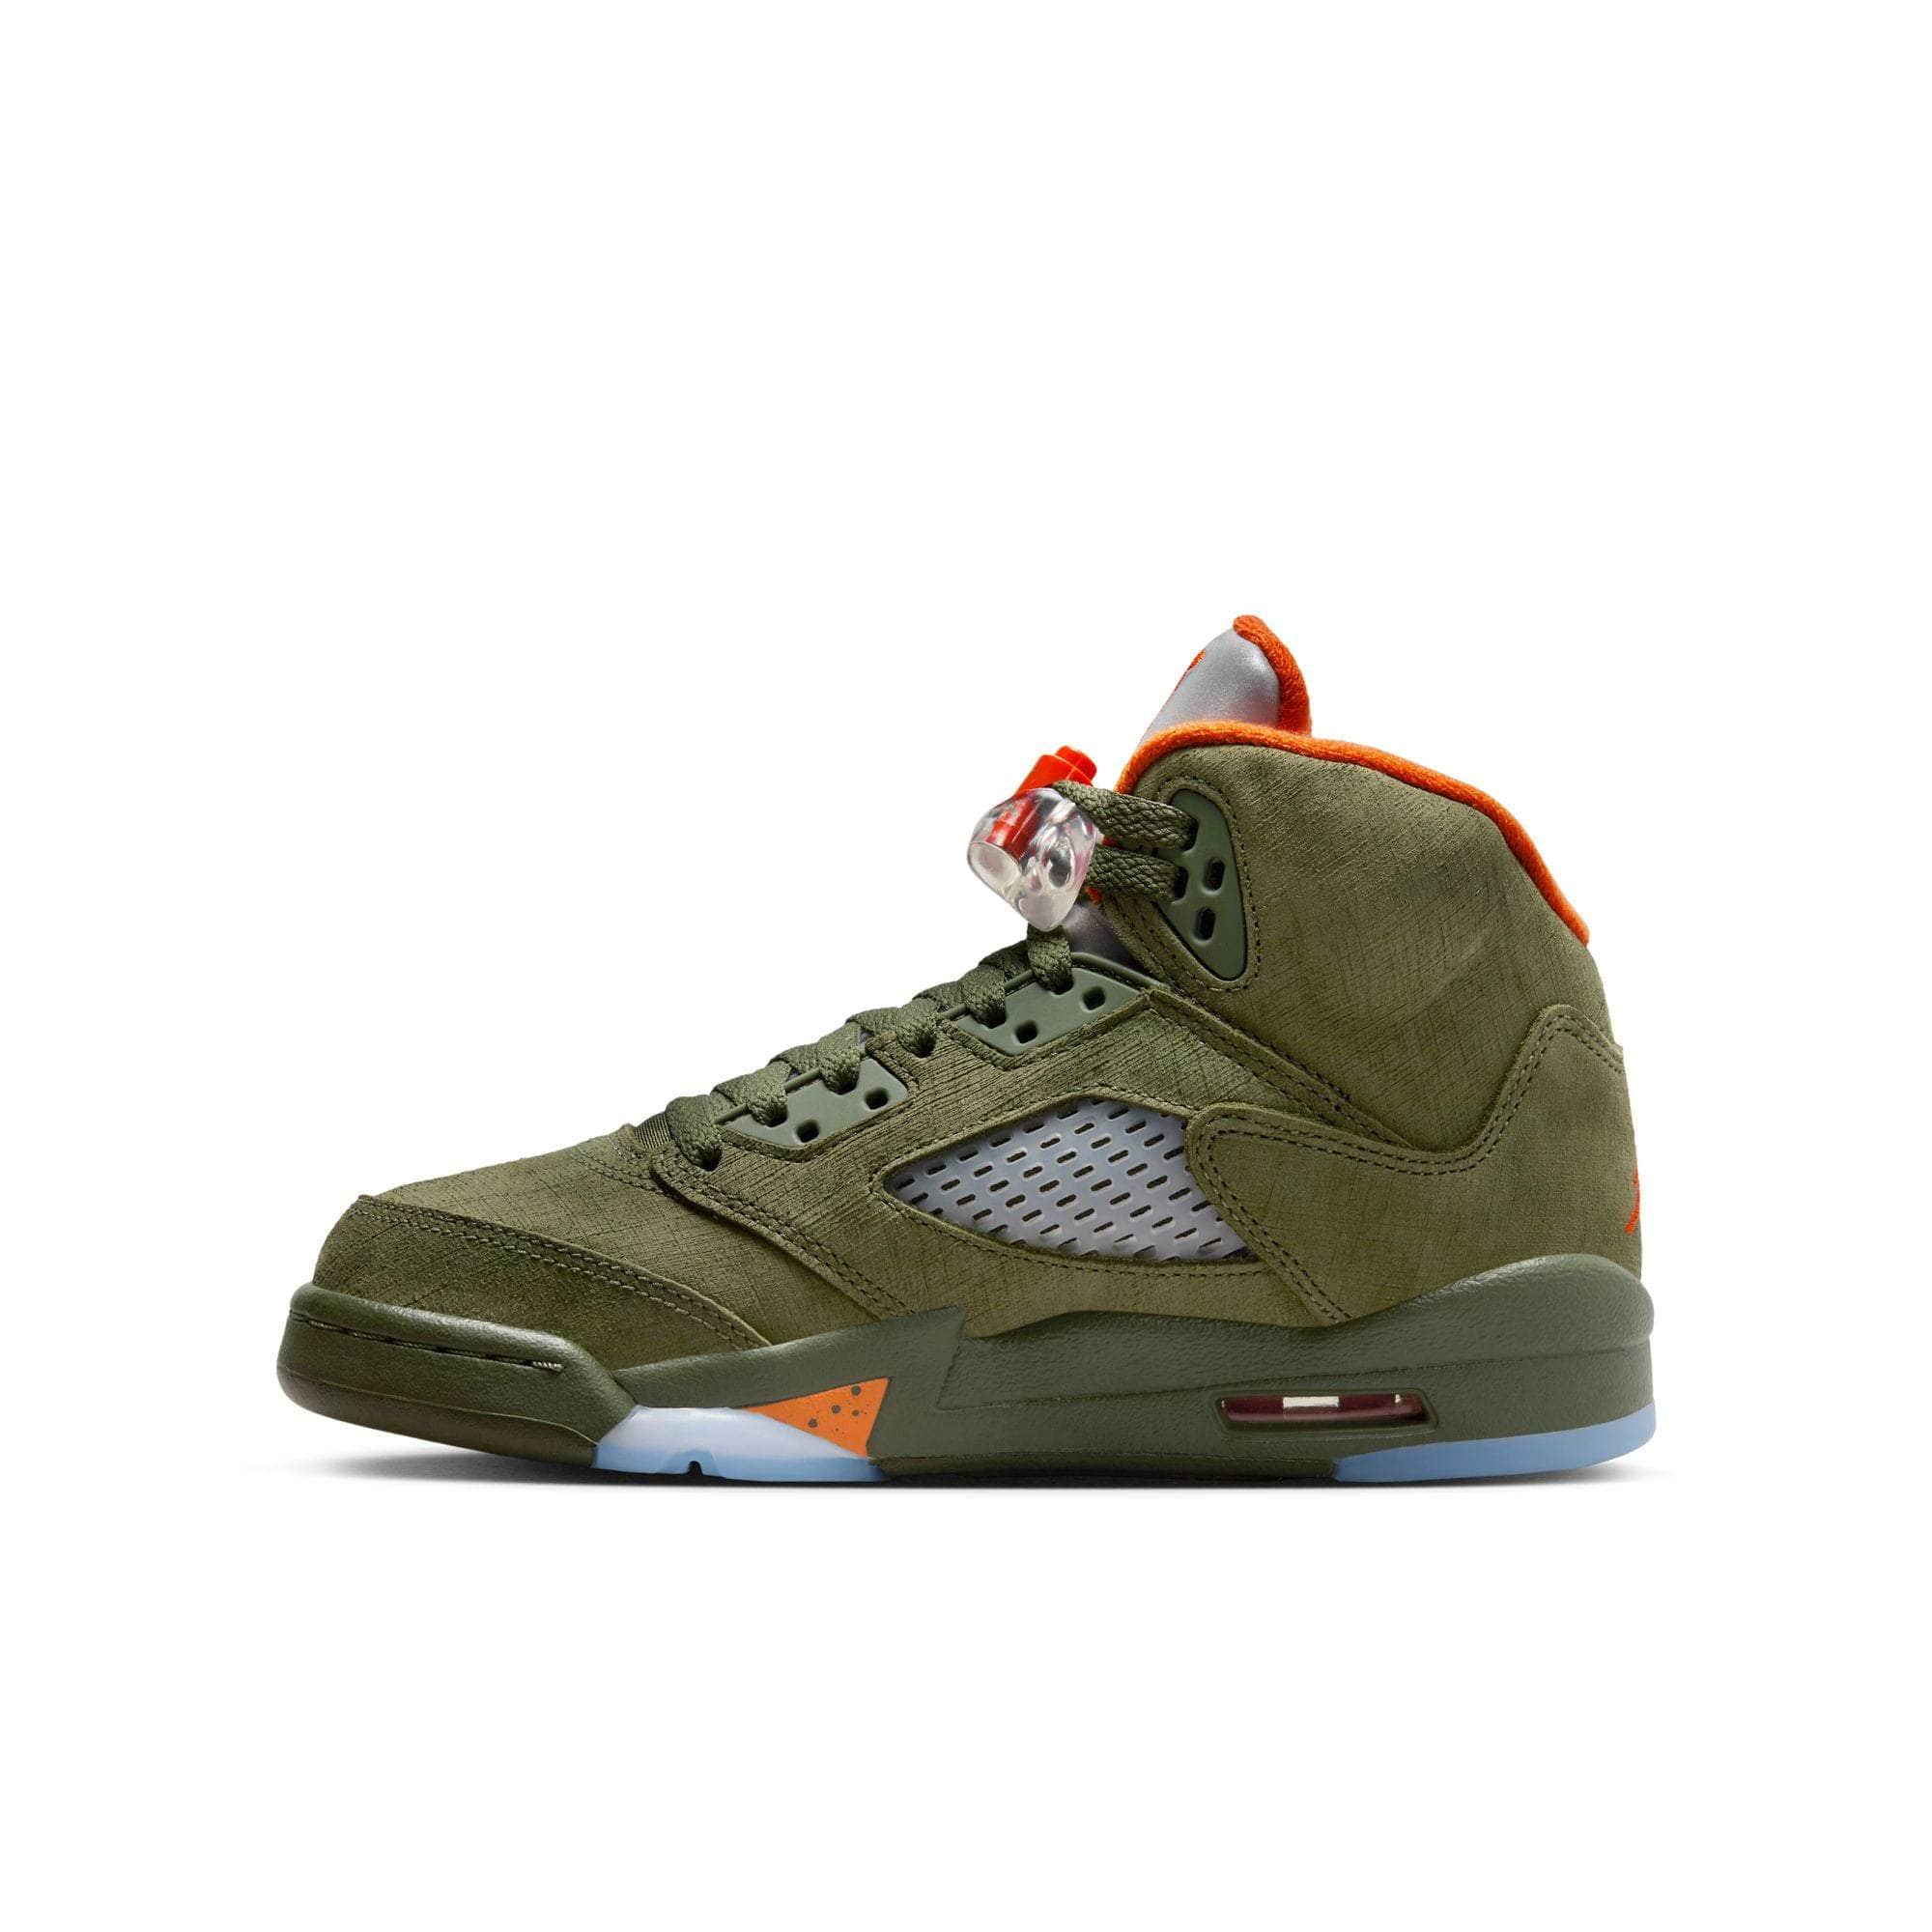 Air Jordan Footwear Air Jordan 5 Retro “Olive“ - Boy's GS